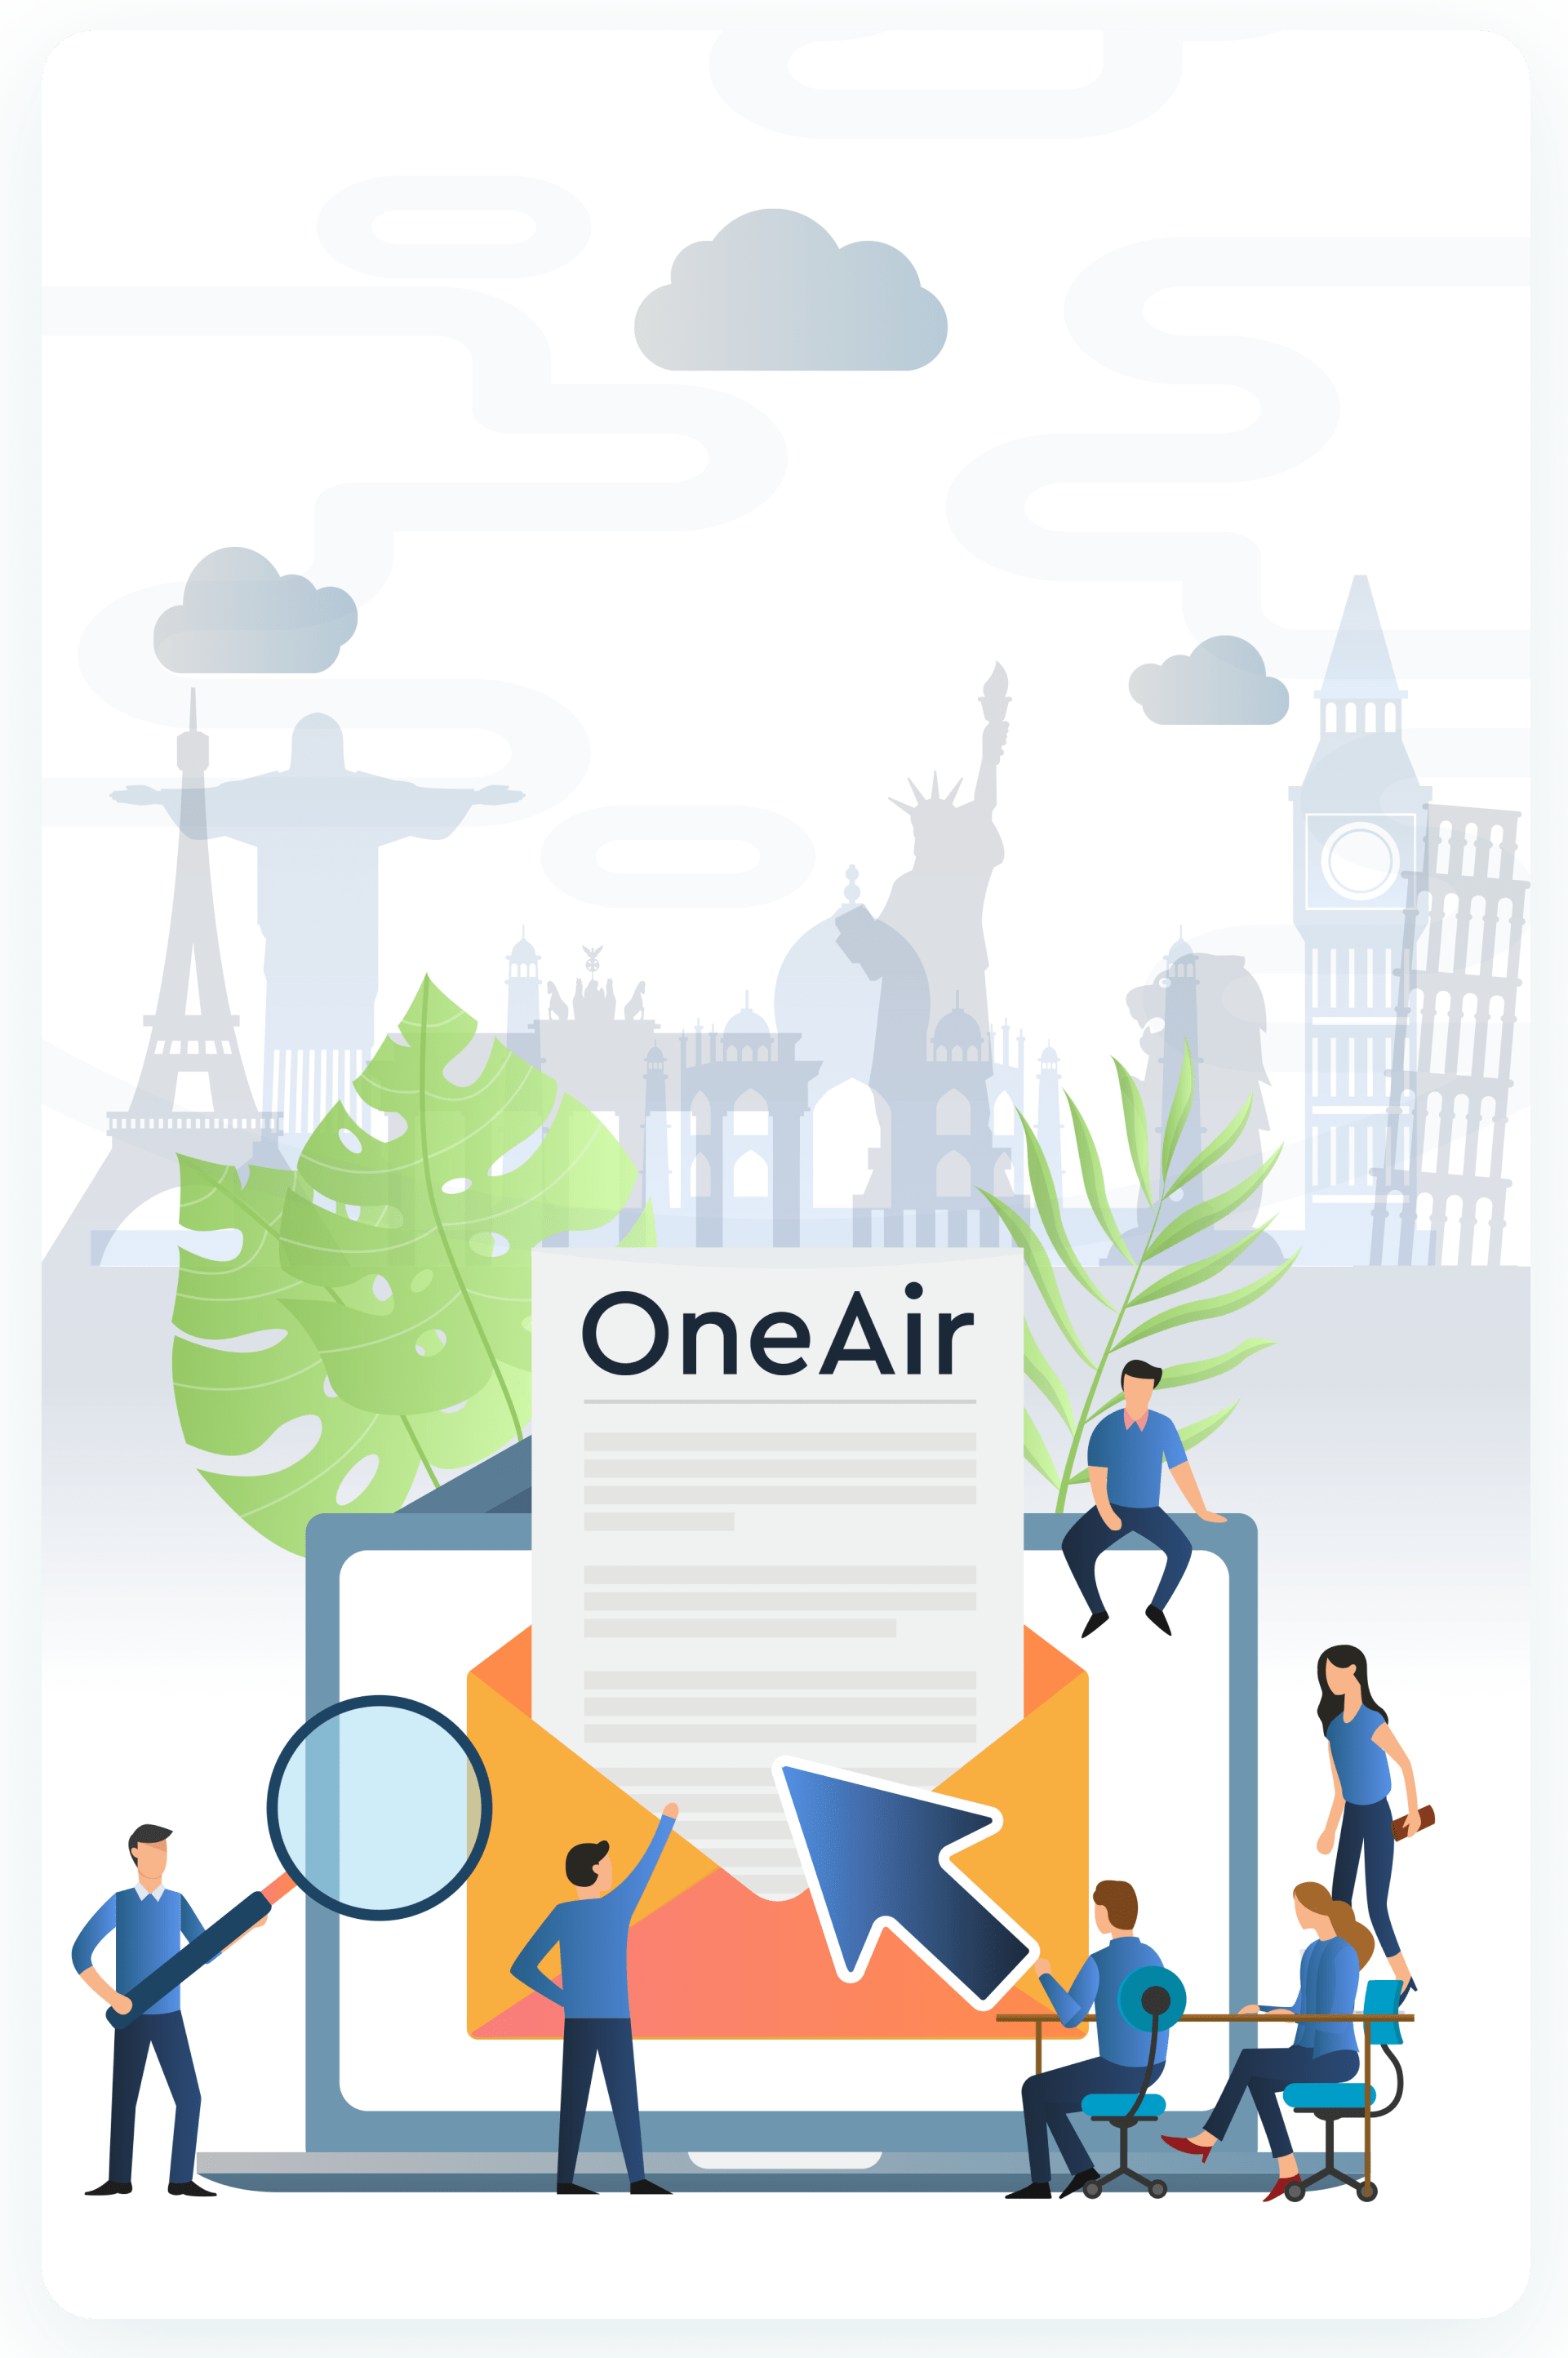 OneAir Vector Image - Cheap Flight Deals